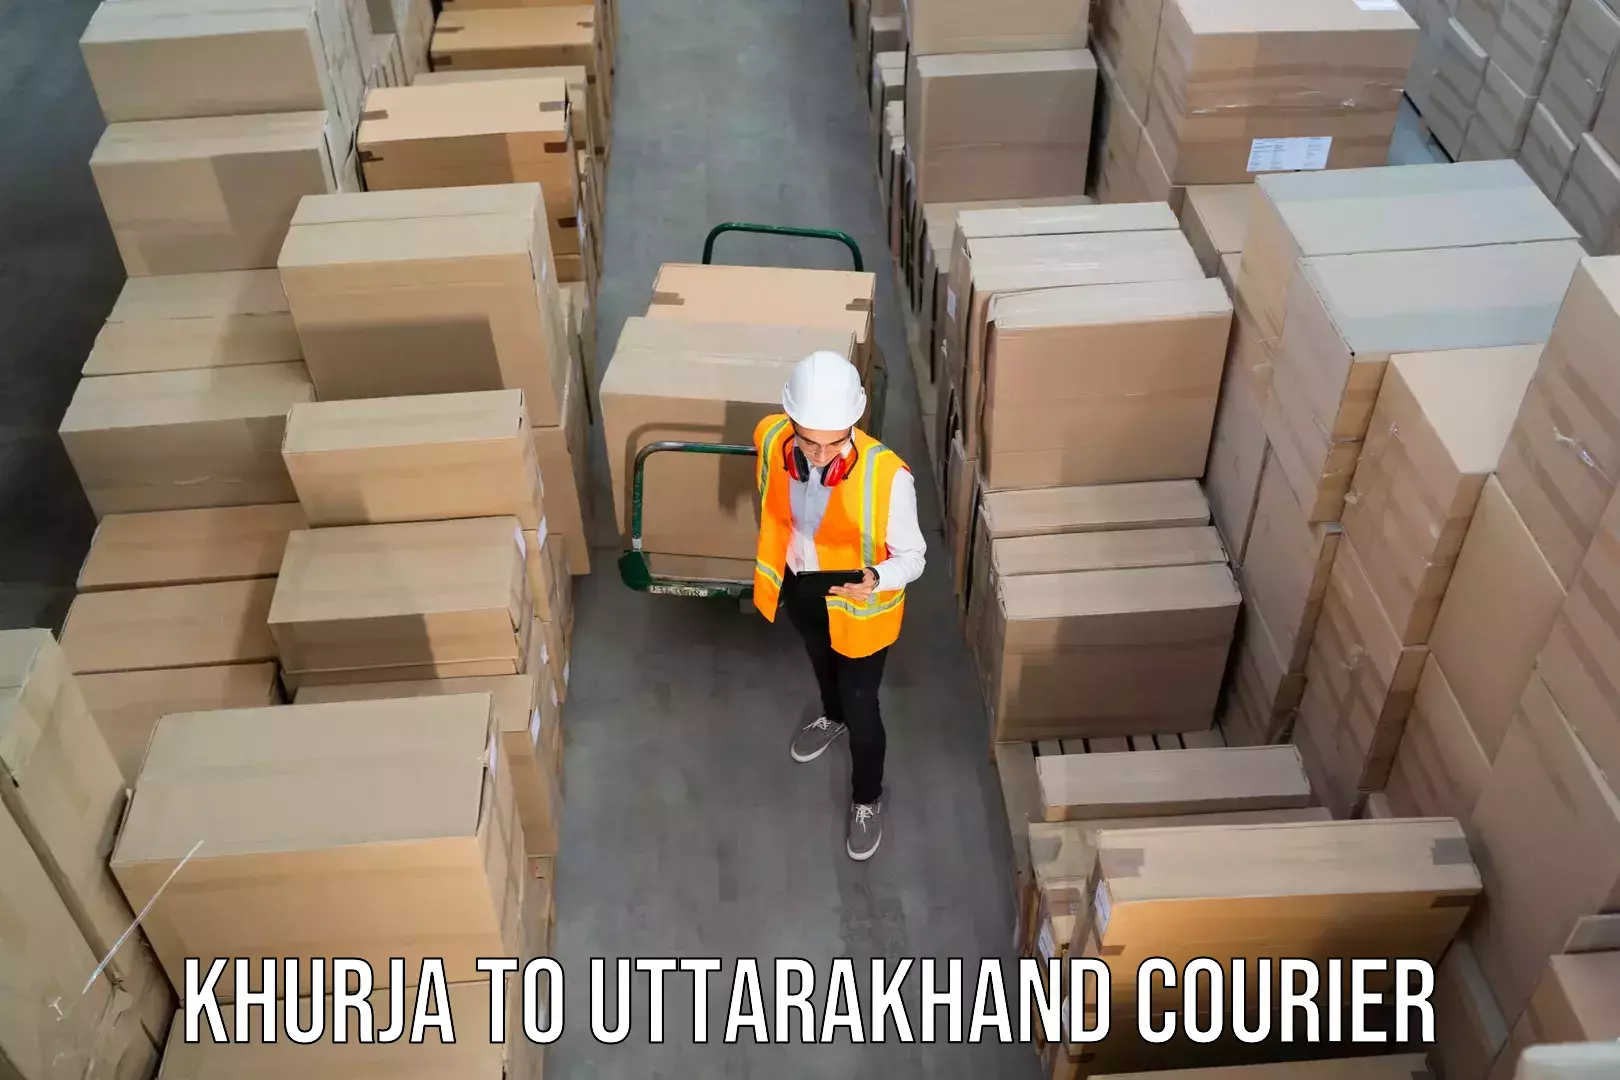 Nationwide courier service in Khurja to Uttarakhand